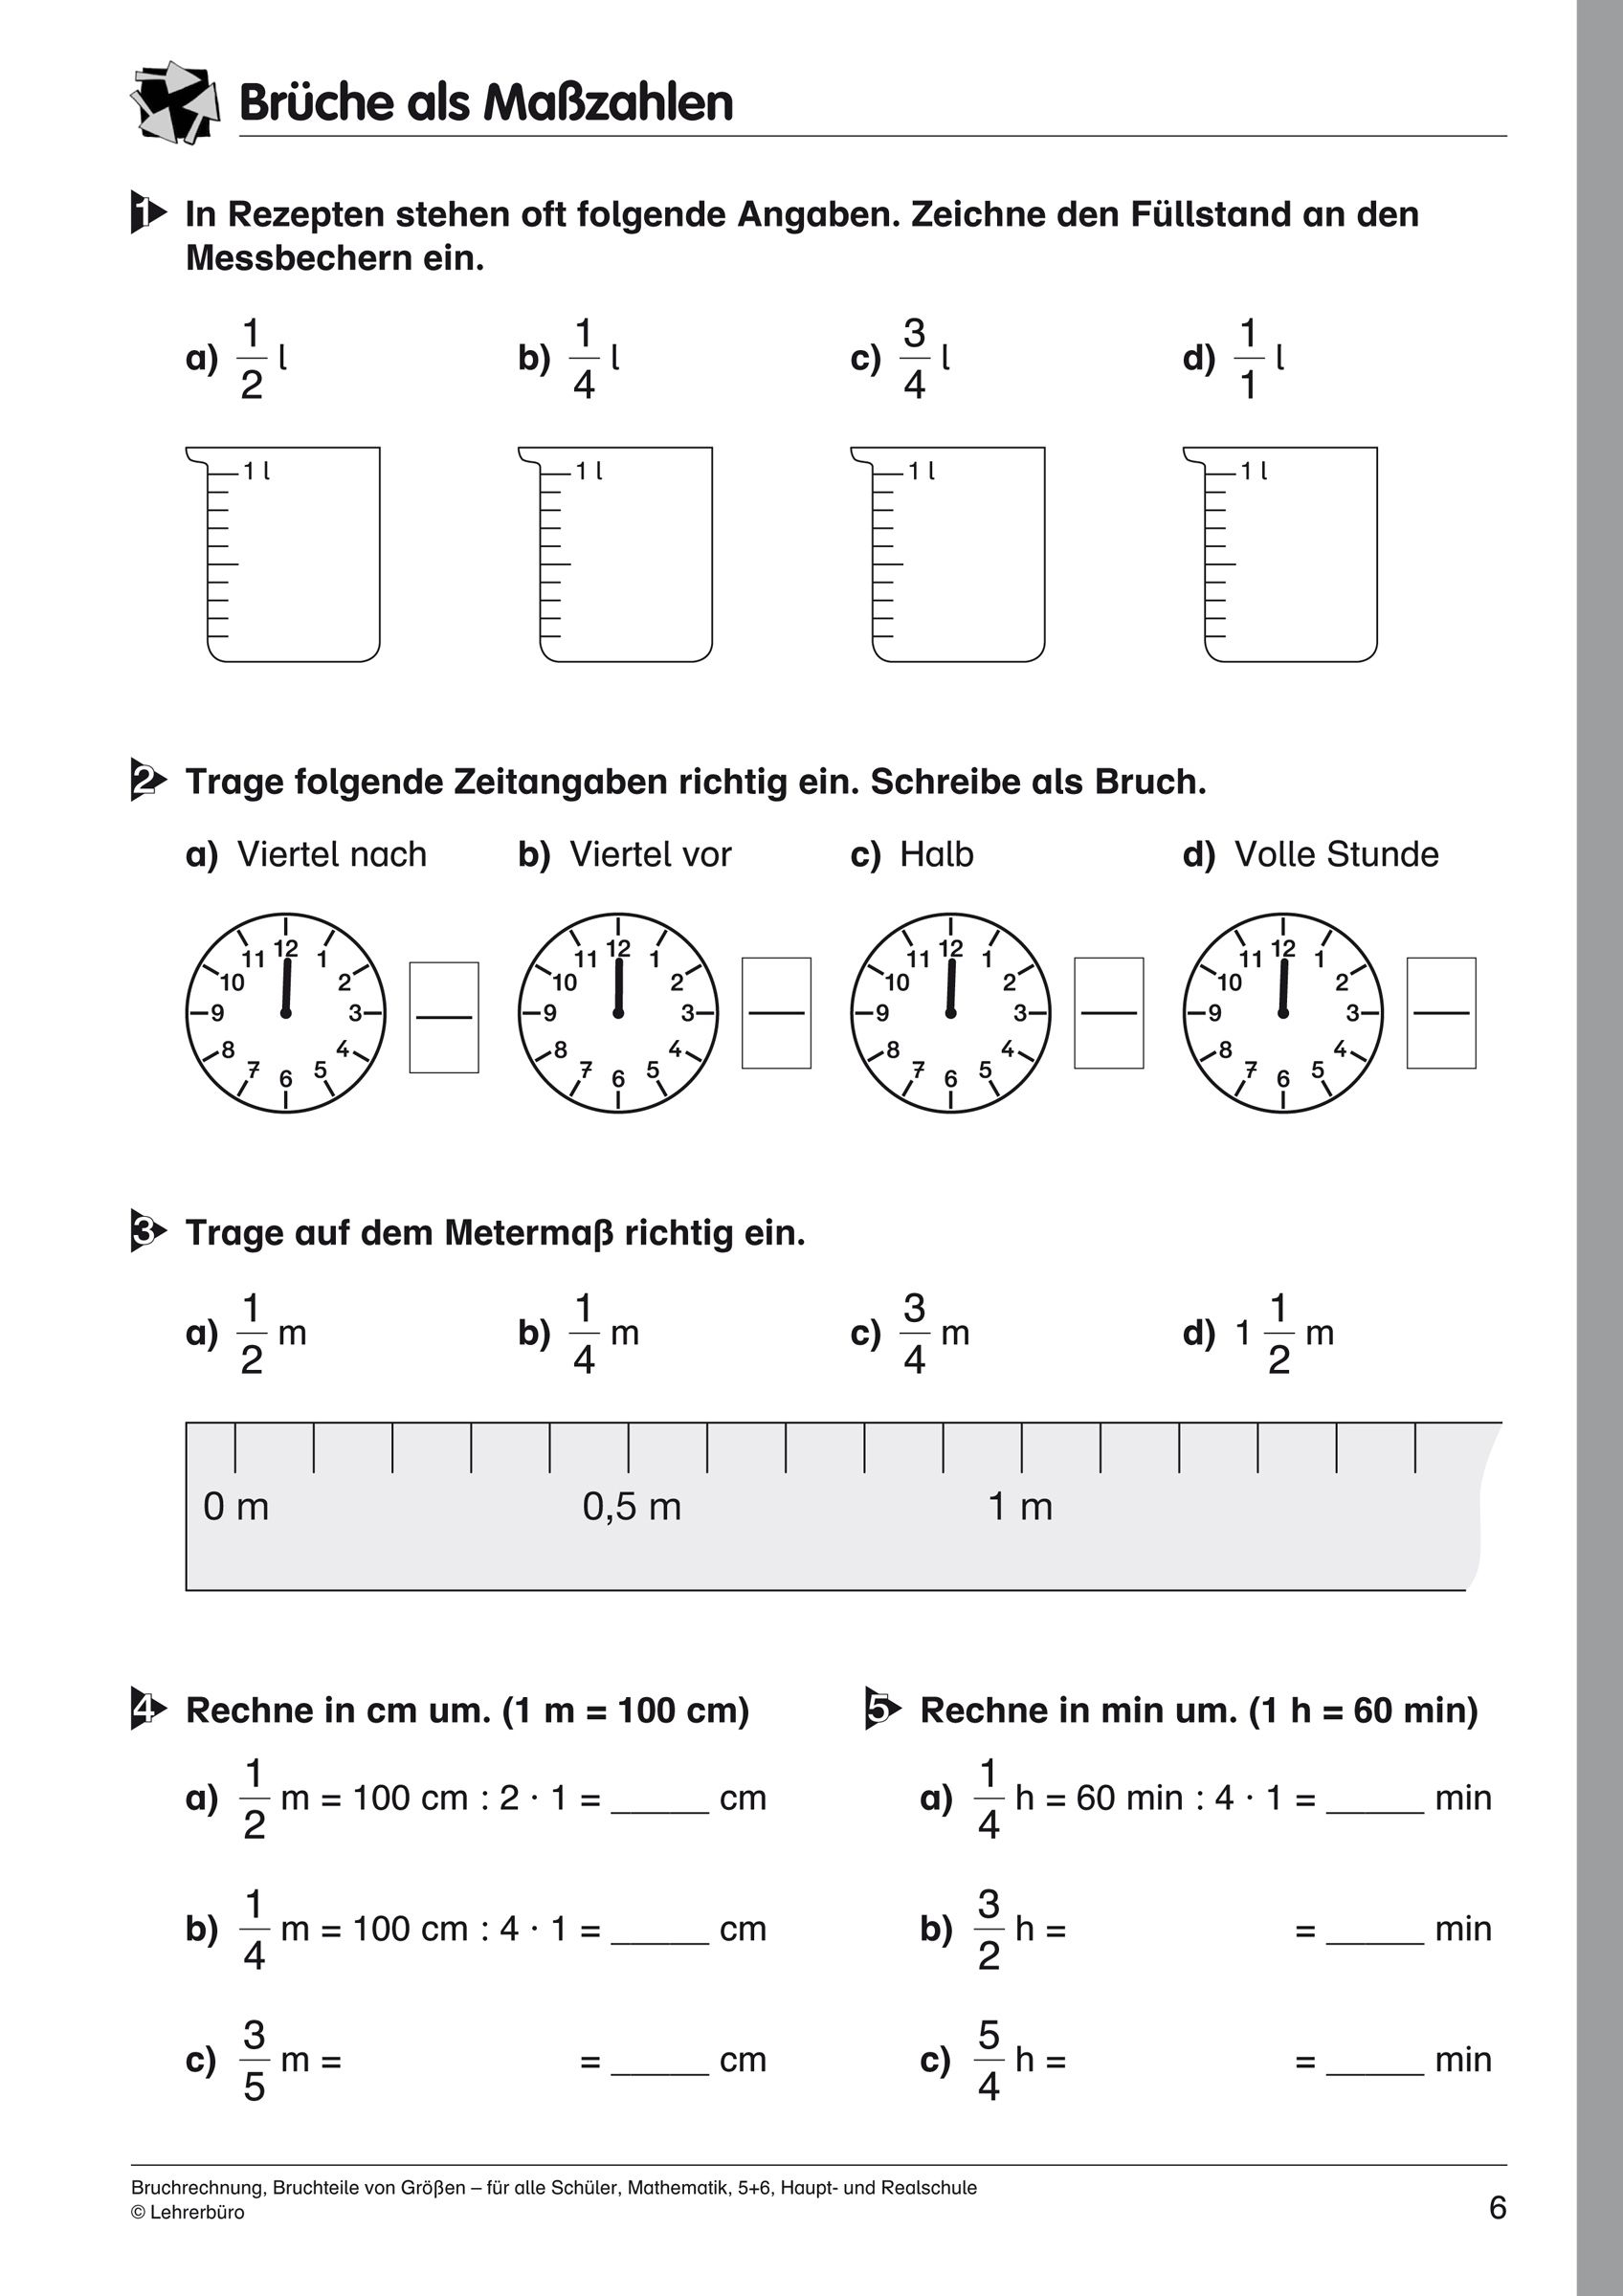 27 Mathe Arbeitsblätter Klasse 5 Gymnasium Zum Ausdrucken ganzes Mathe Arbeitsblätter Klasse 3 Zum Ausdrucken